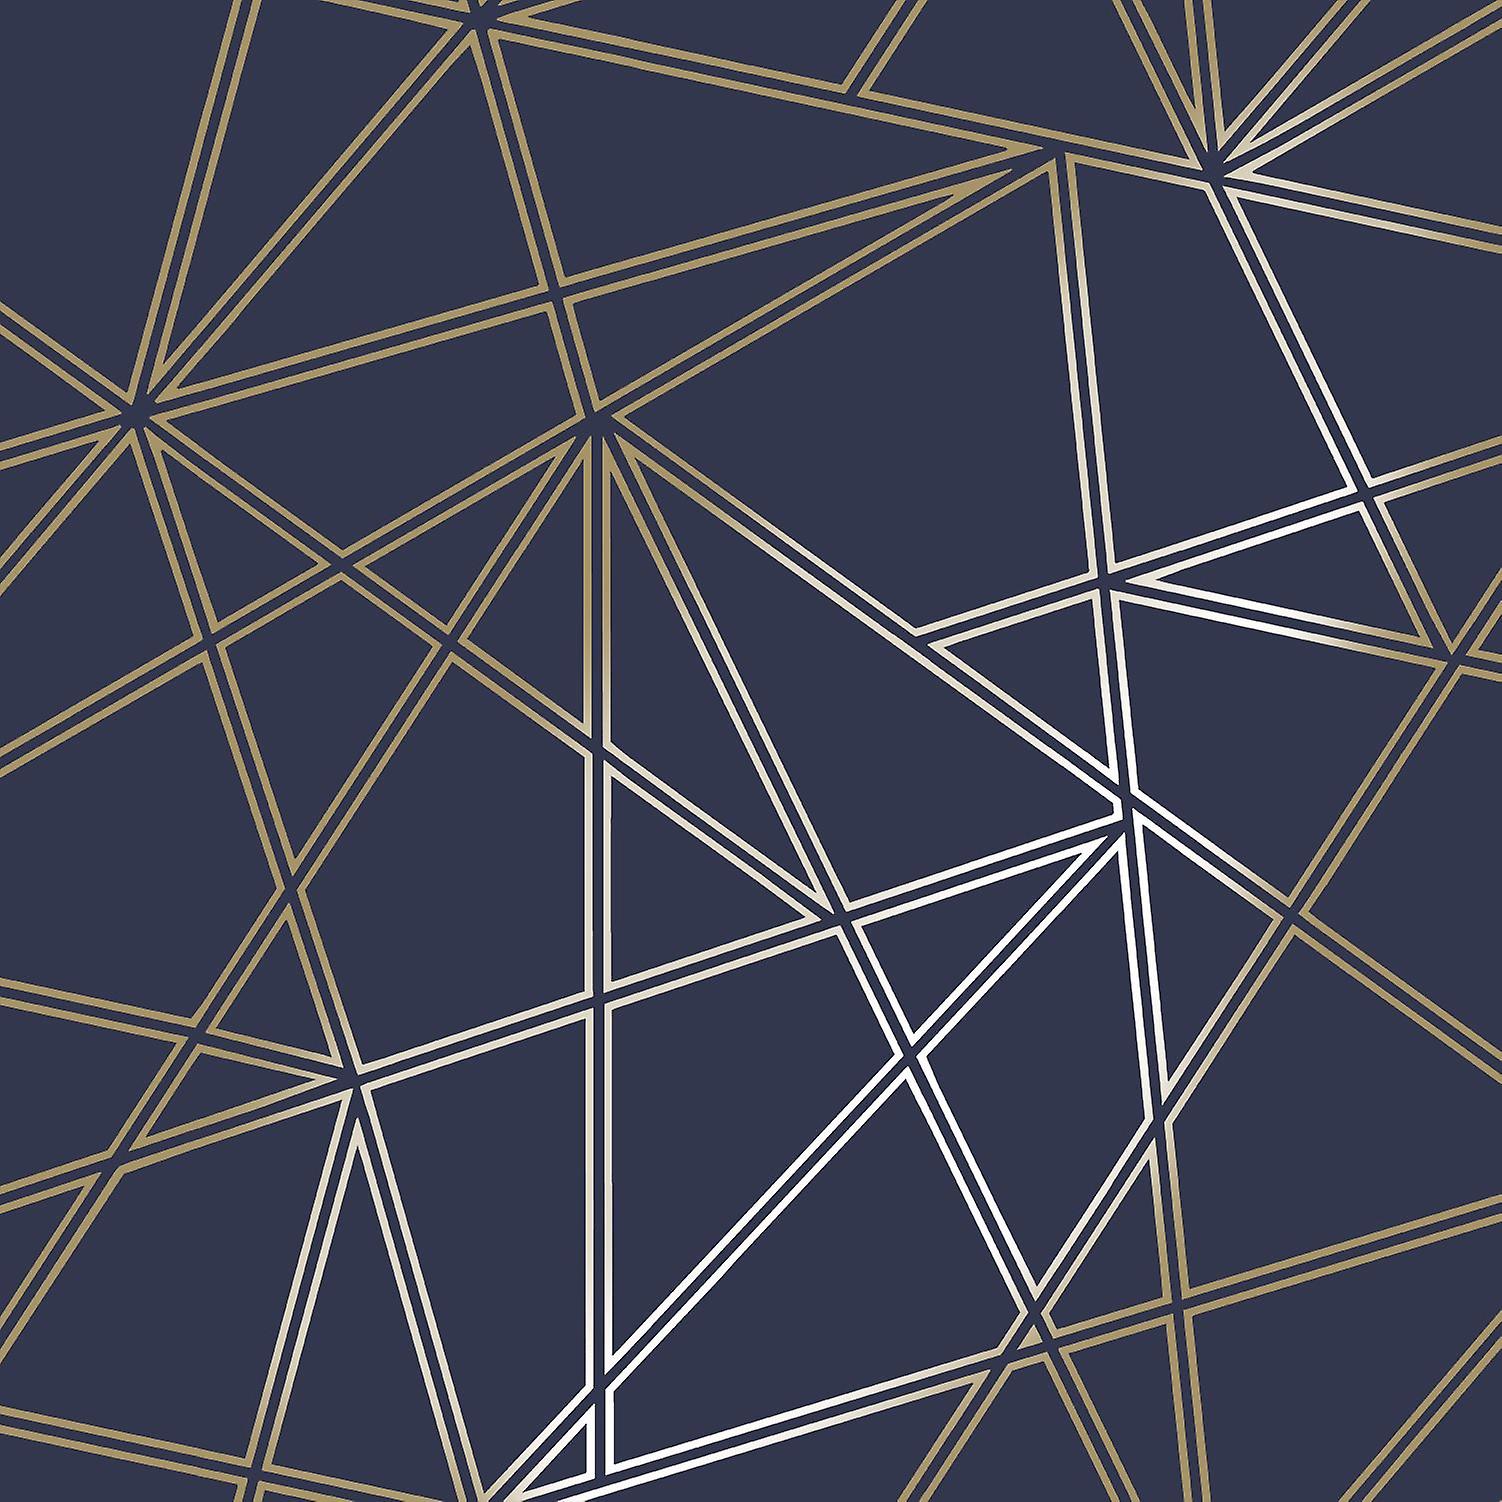  Bewerbung Hintergrundbild 1502x1502. 3D Apex Geometrischen Hintergrundbild Dreieck Metallischen Luxus Paladium Holden Dekor Navy Gold